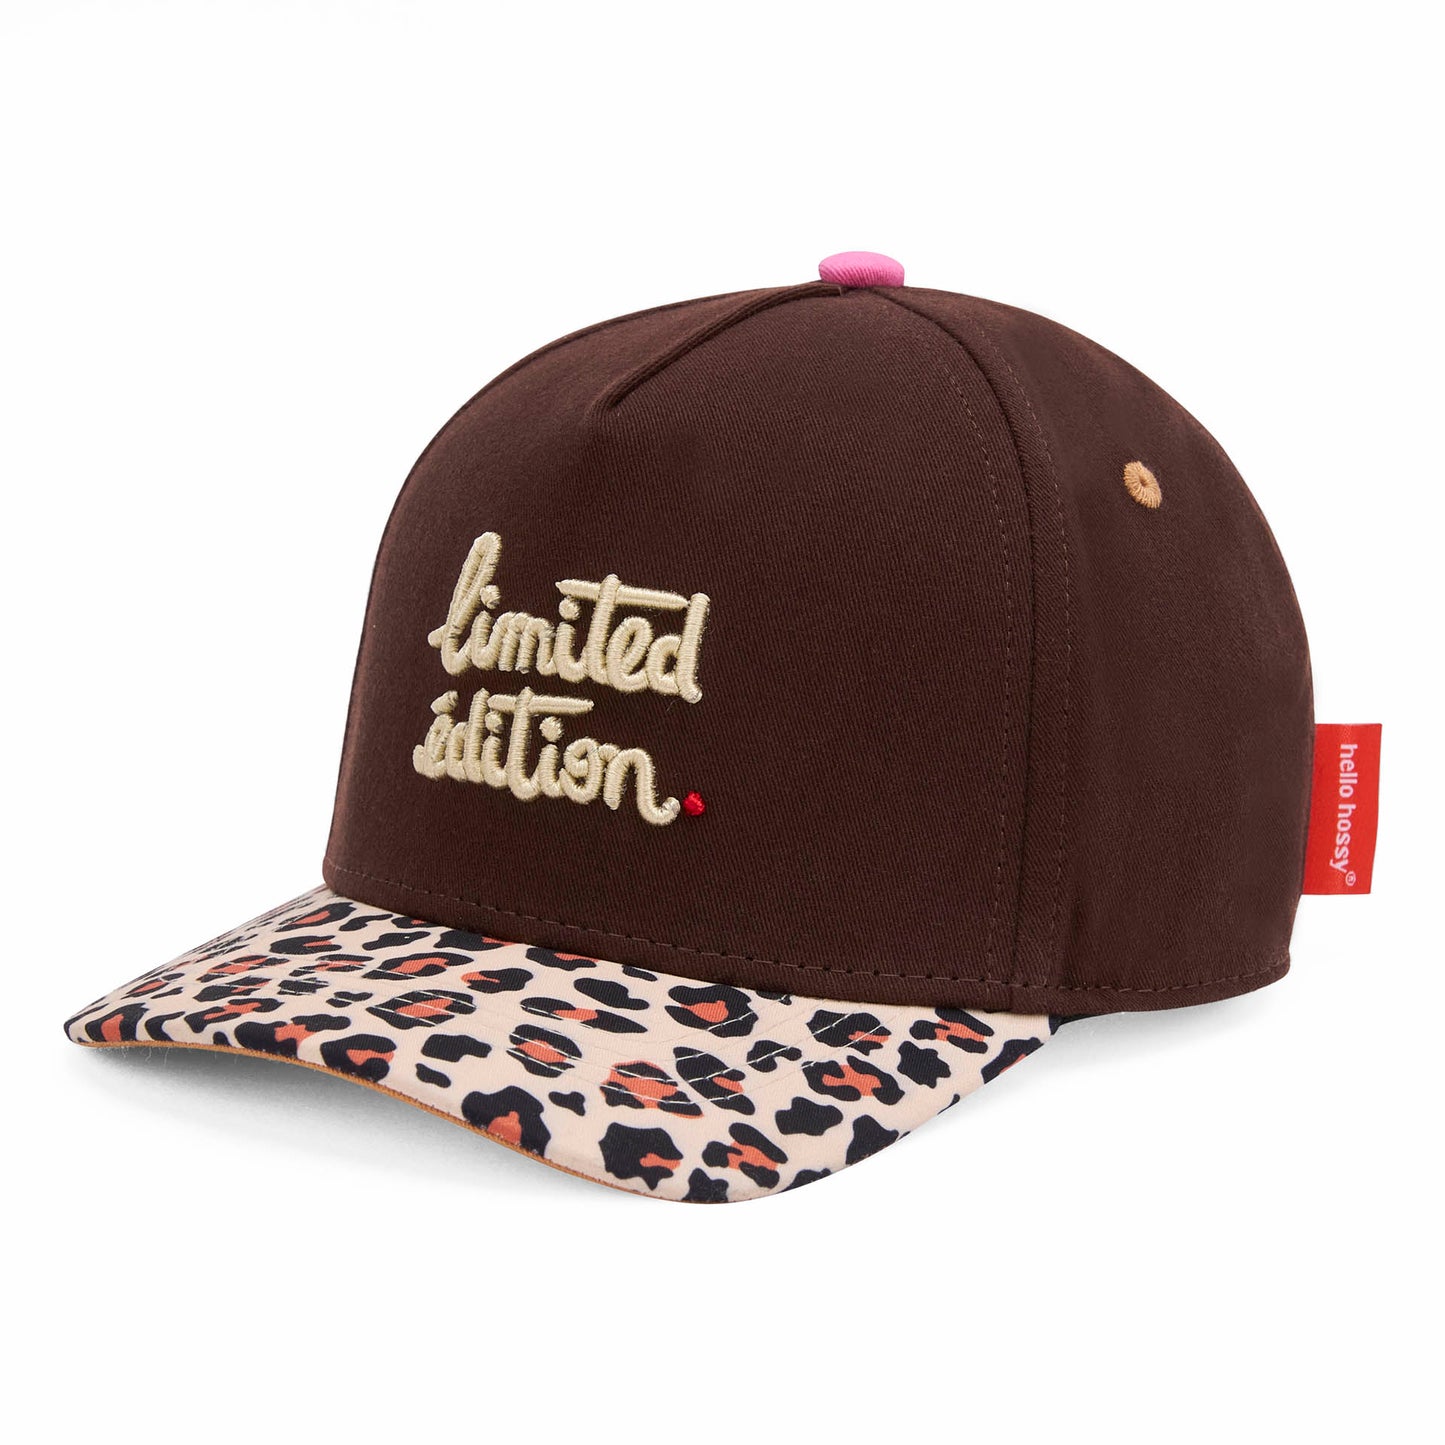 Leopard #4 Cap